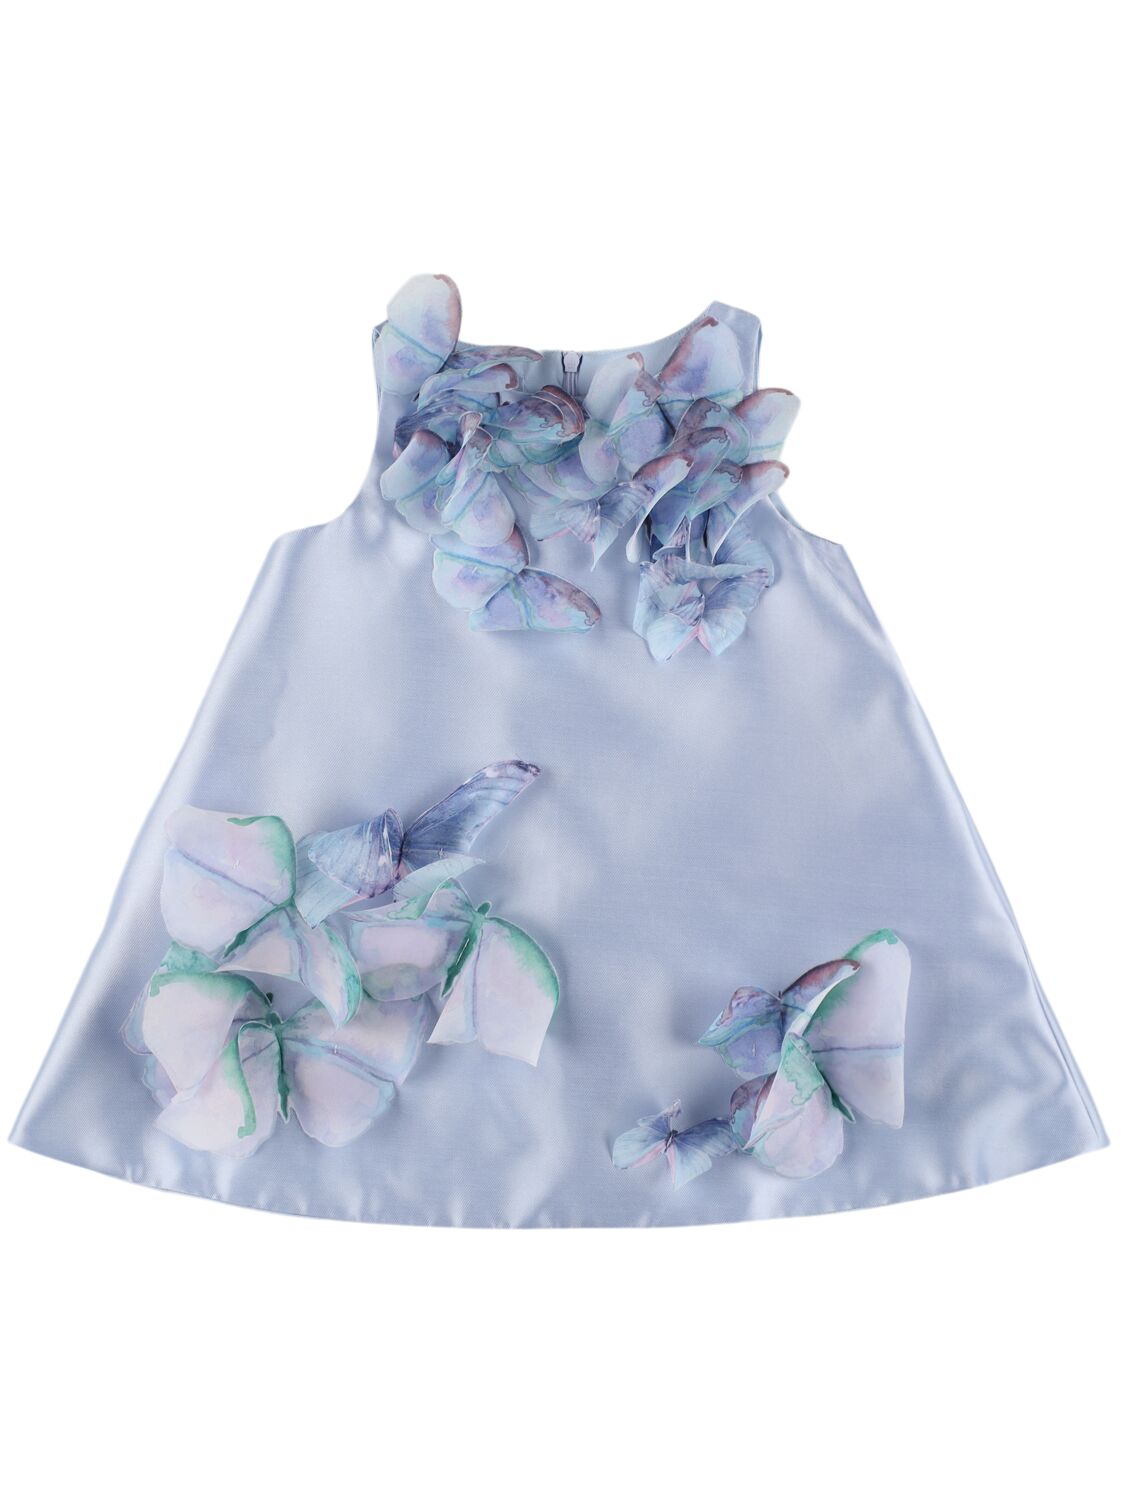 Image of Taffeta Dress W/ Butterfly Appliqués